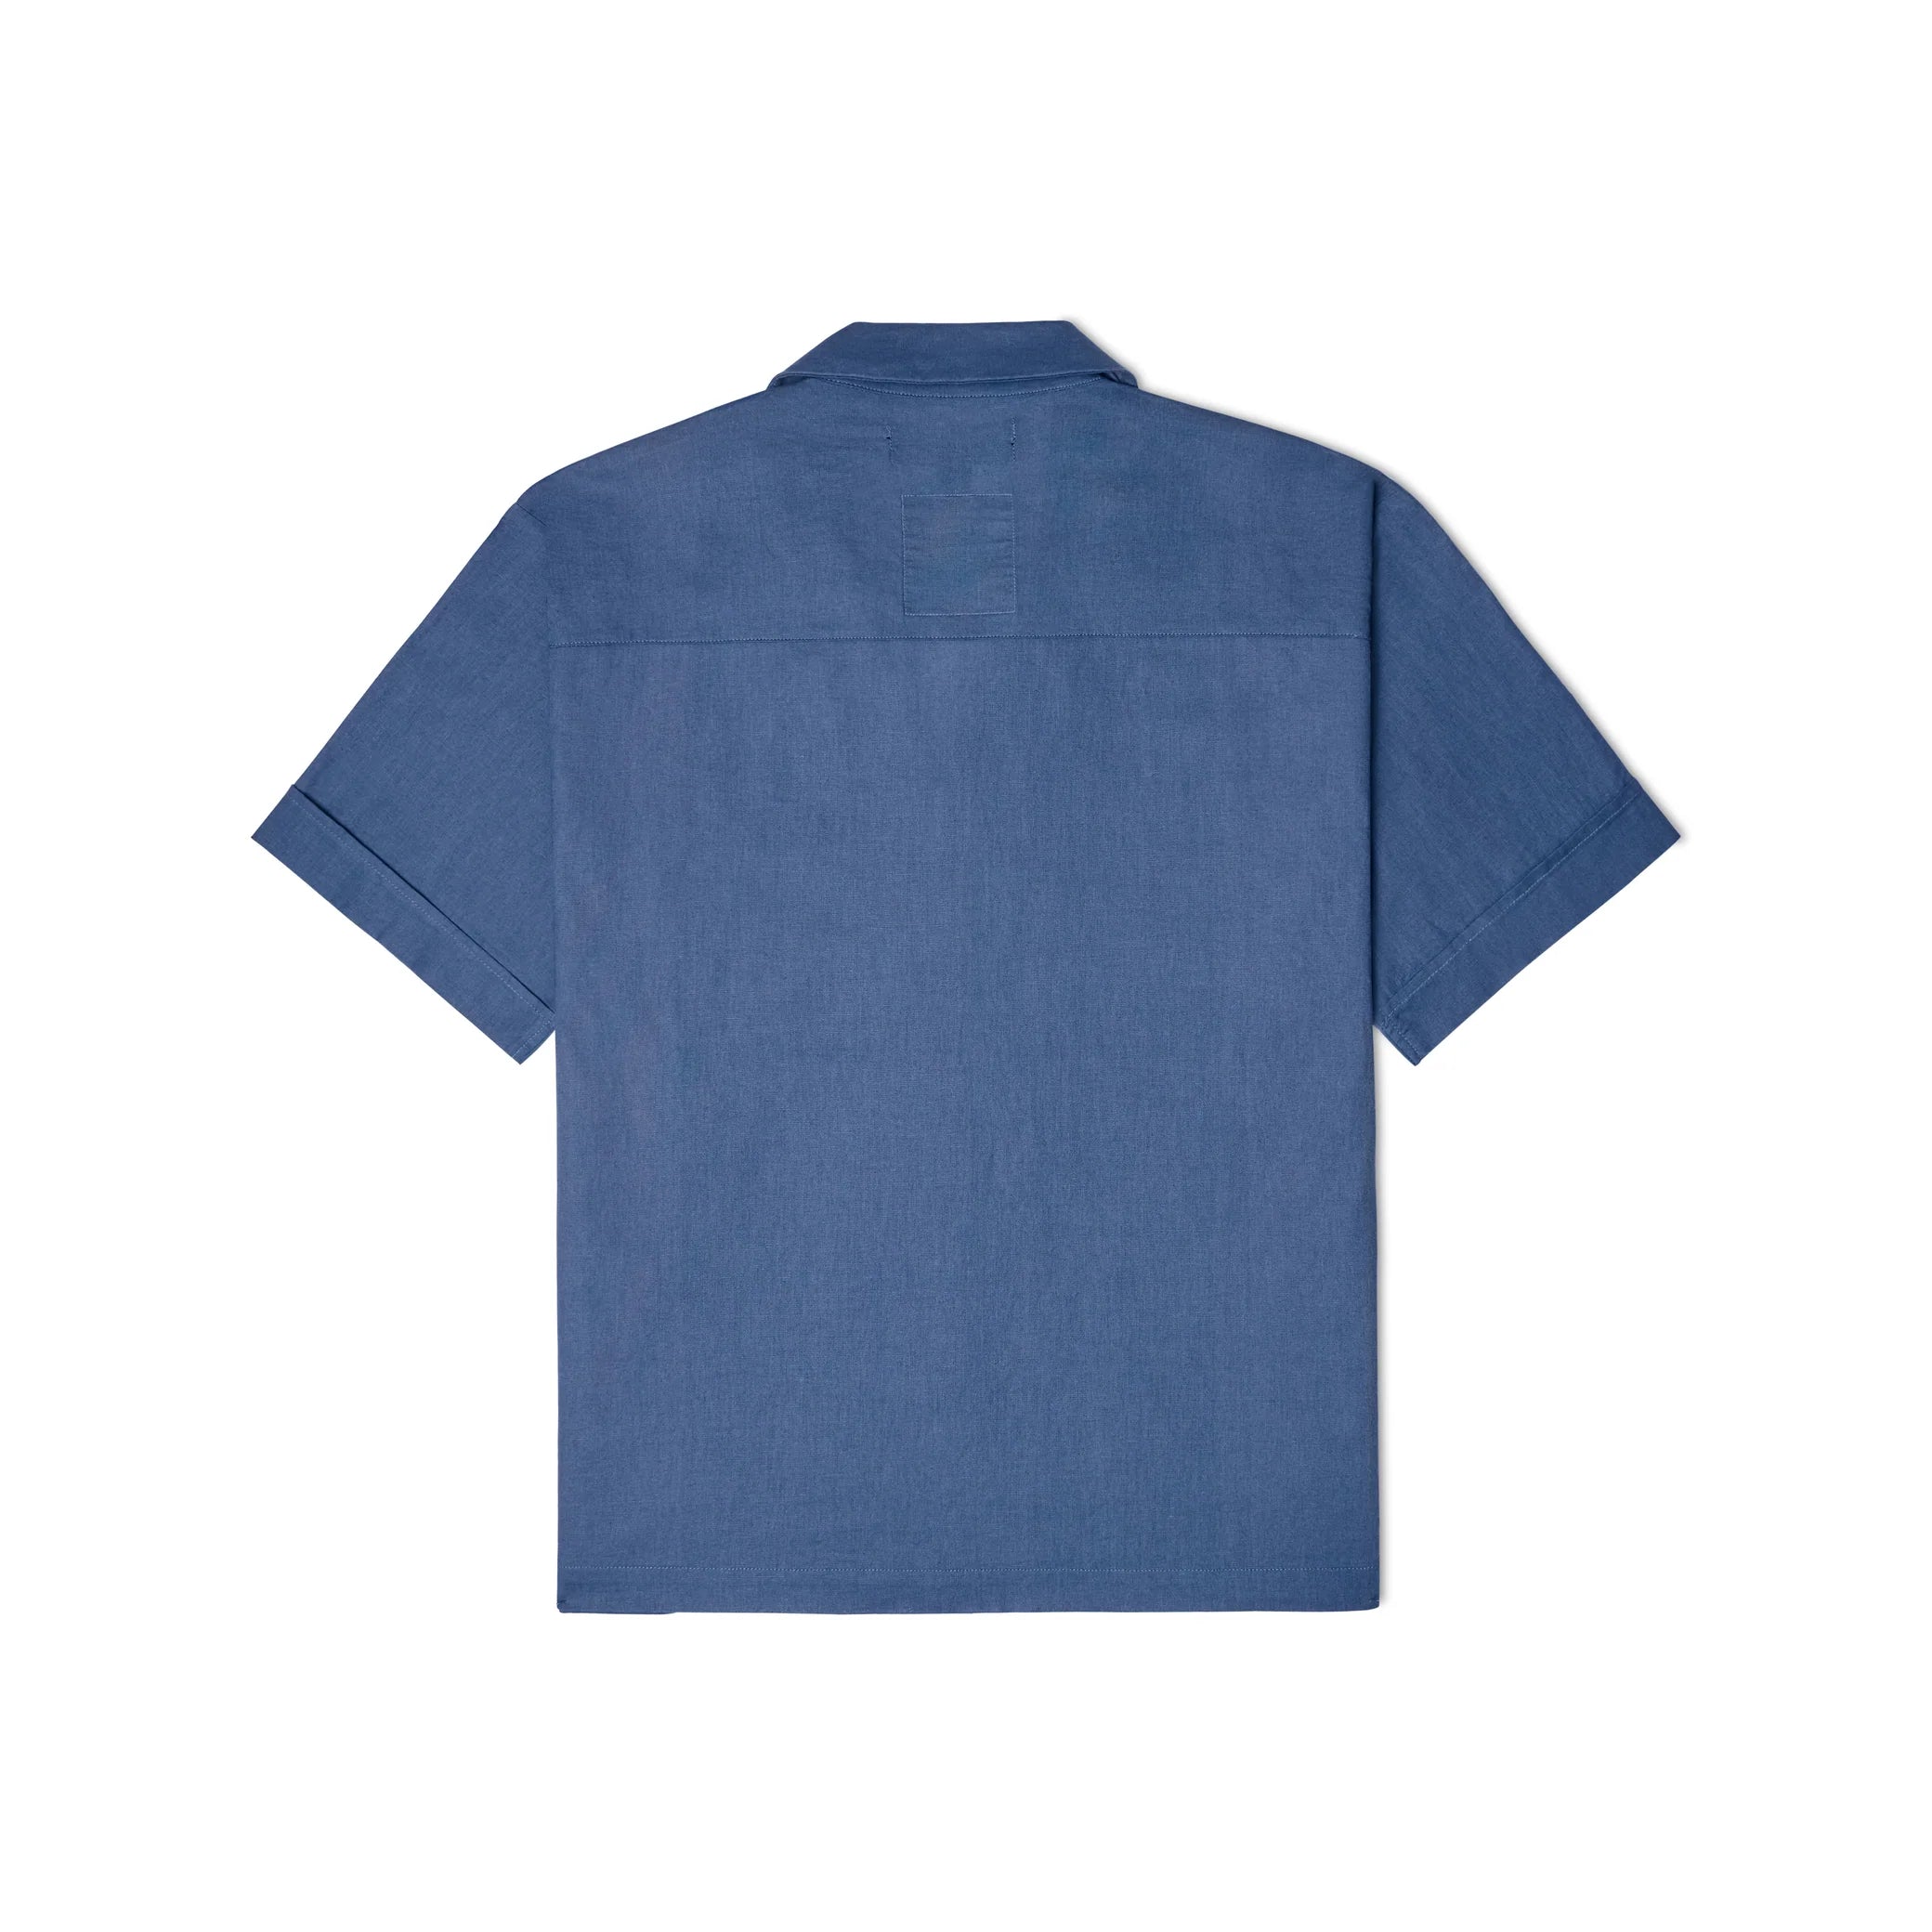 Kidsuper Face Camo Shirt - Blue